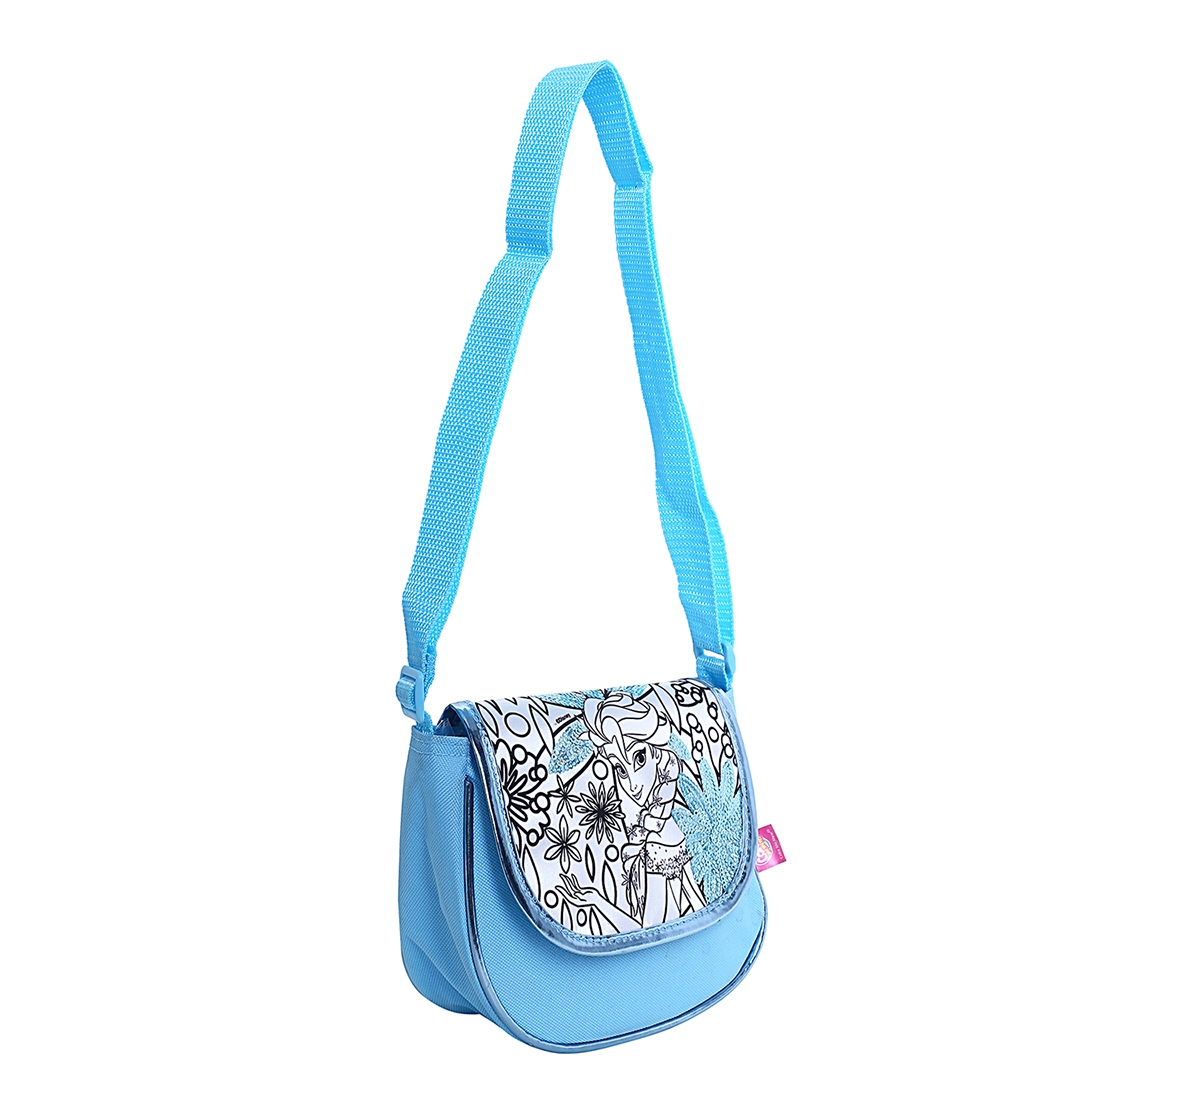 DISNEY | Disney Simba Color Me Mine Spring Sequin Bag - Frozen, Blue DIY Art & Craft Kits for Kids age 6Y+ 1